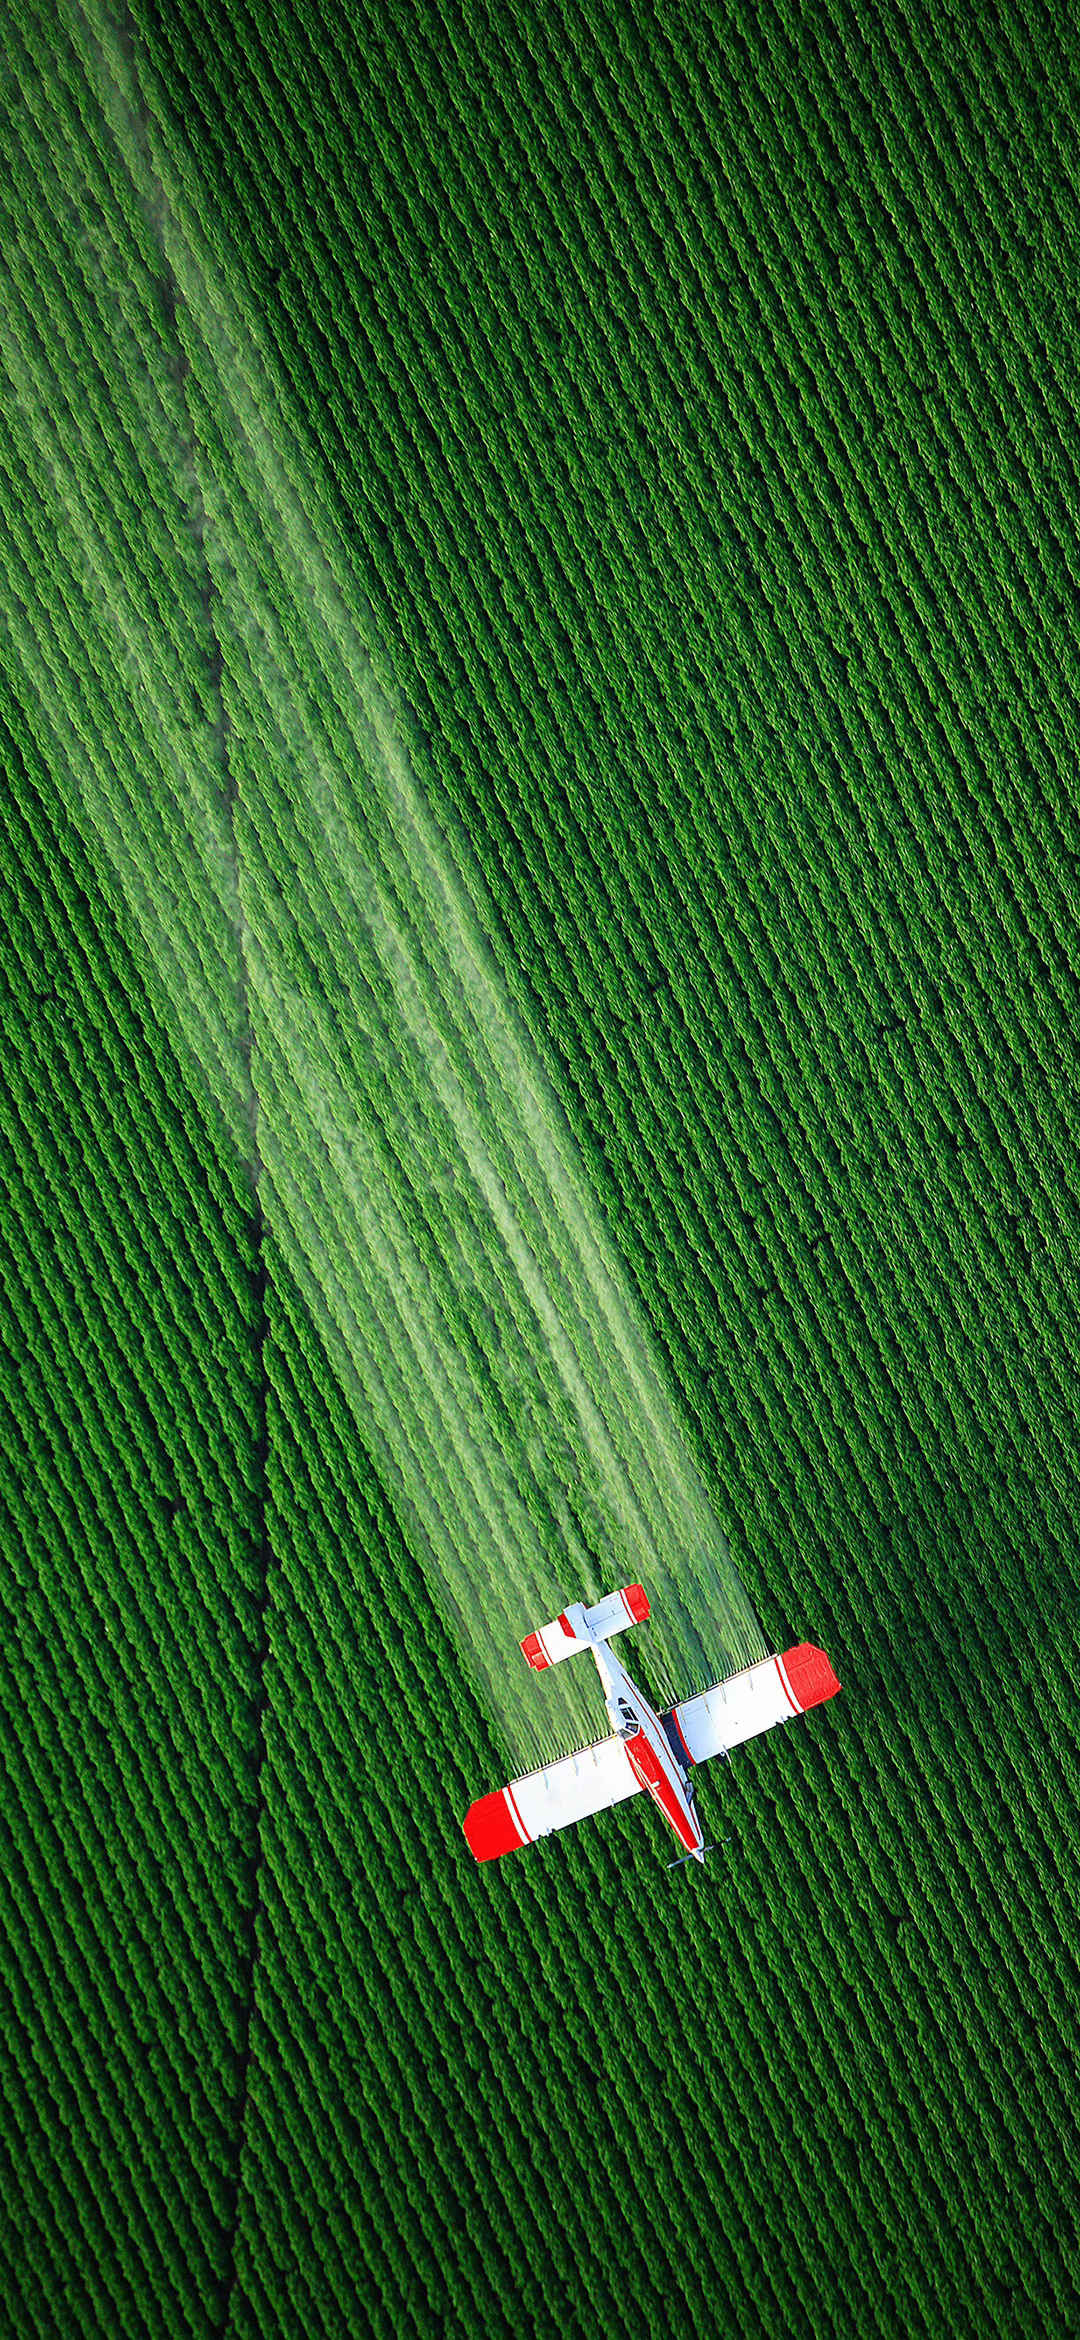 俯瞰飞机喷洒农药绿色风景手机壁纸-